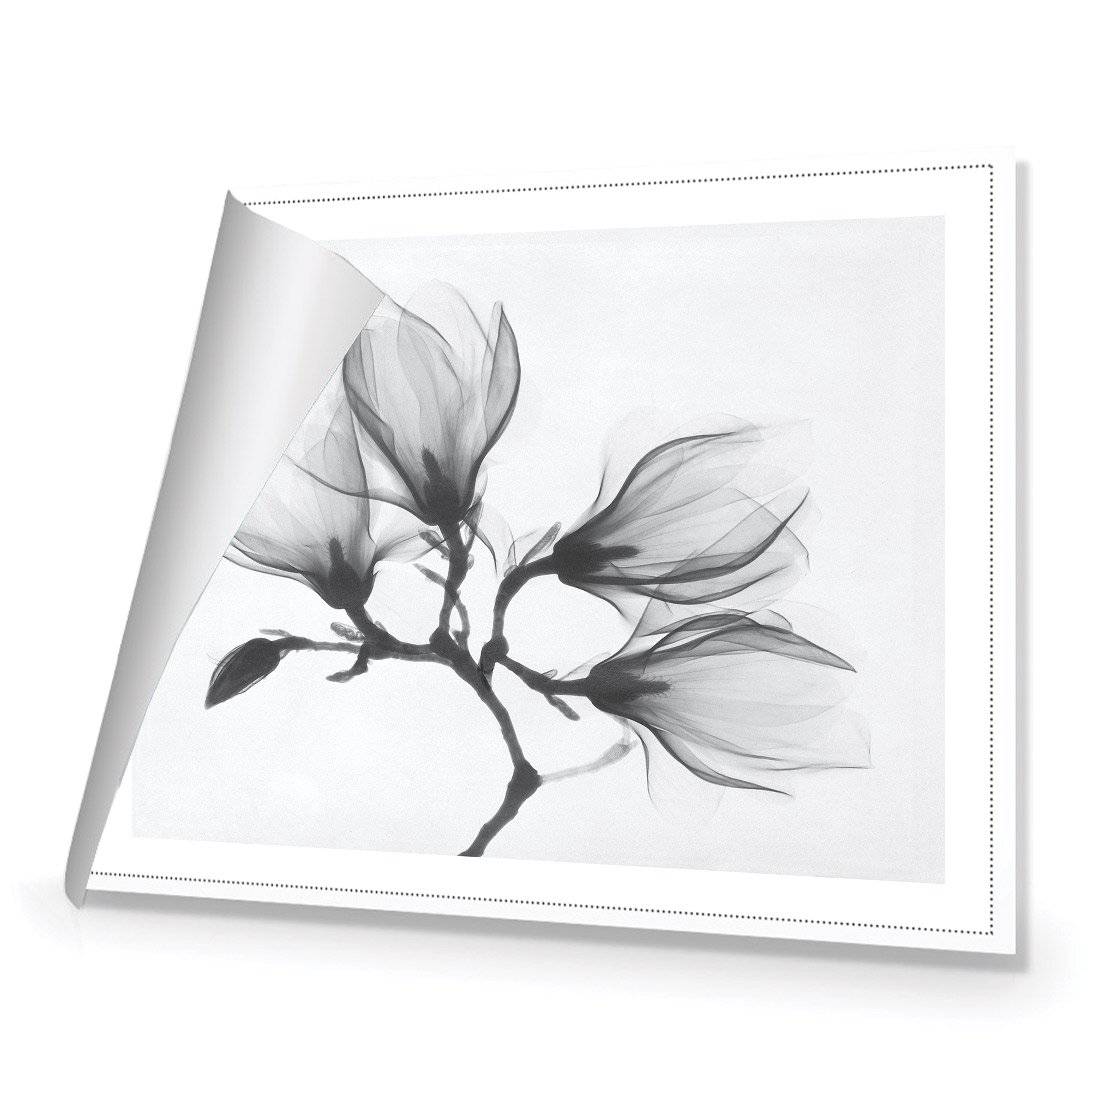 Magnolia Blossoms Canvas Art-Canvas-Wall Art Designs-45x30cm-Rolled Canvas-Wall Art Designs